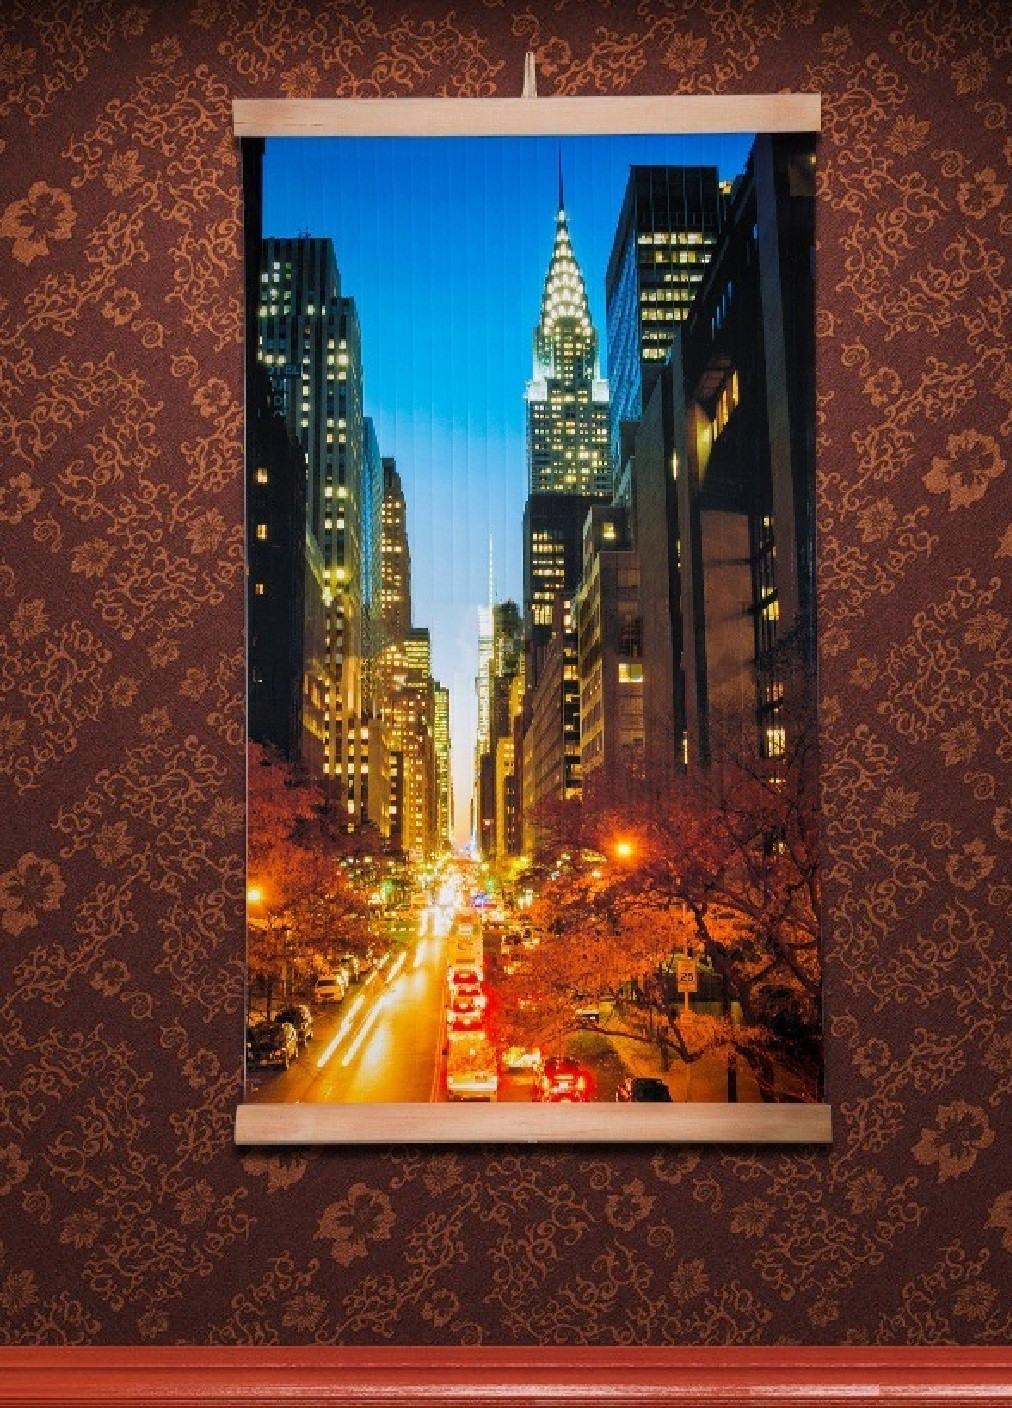 Інфрачервоний настінний обігрівач електричний картина 400 Вт (473368-Prob) Манхеттен нічний Unbranded (254478584)